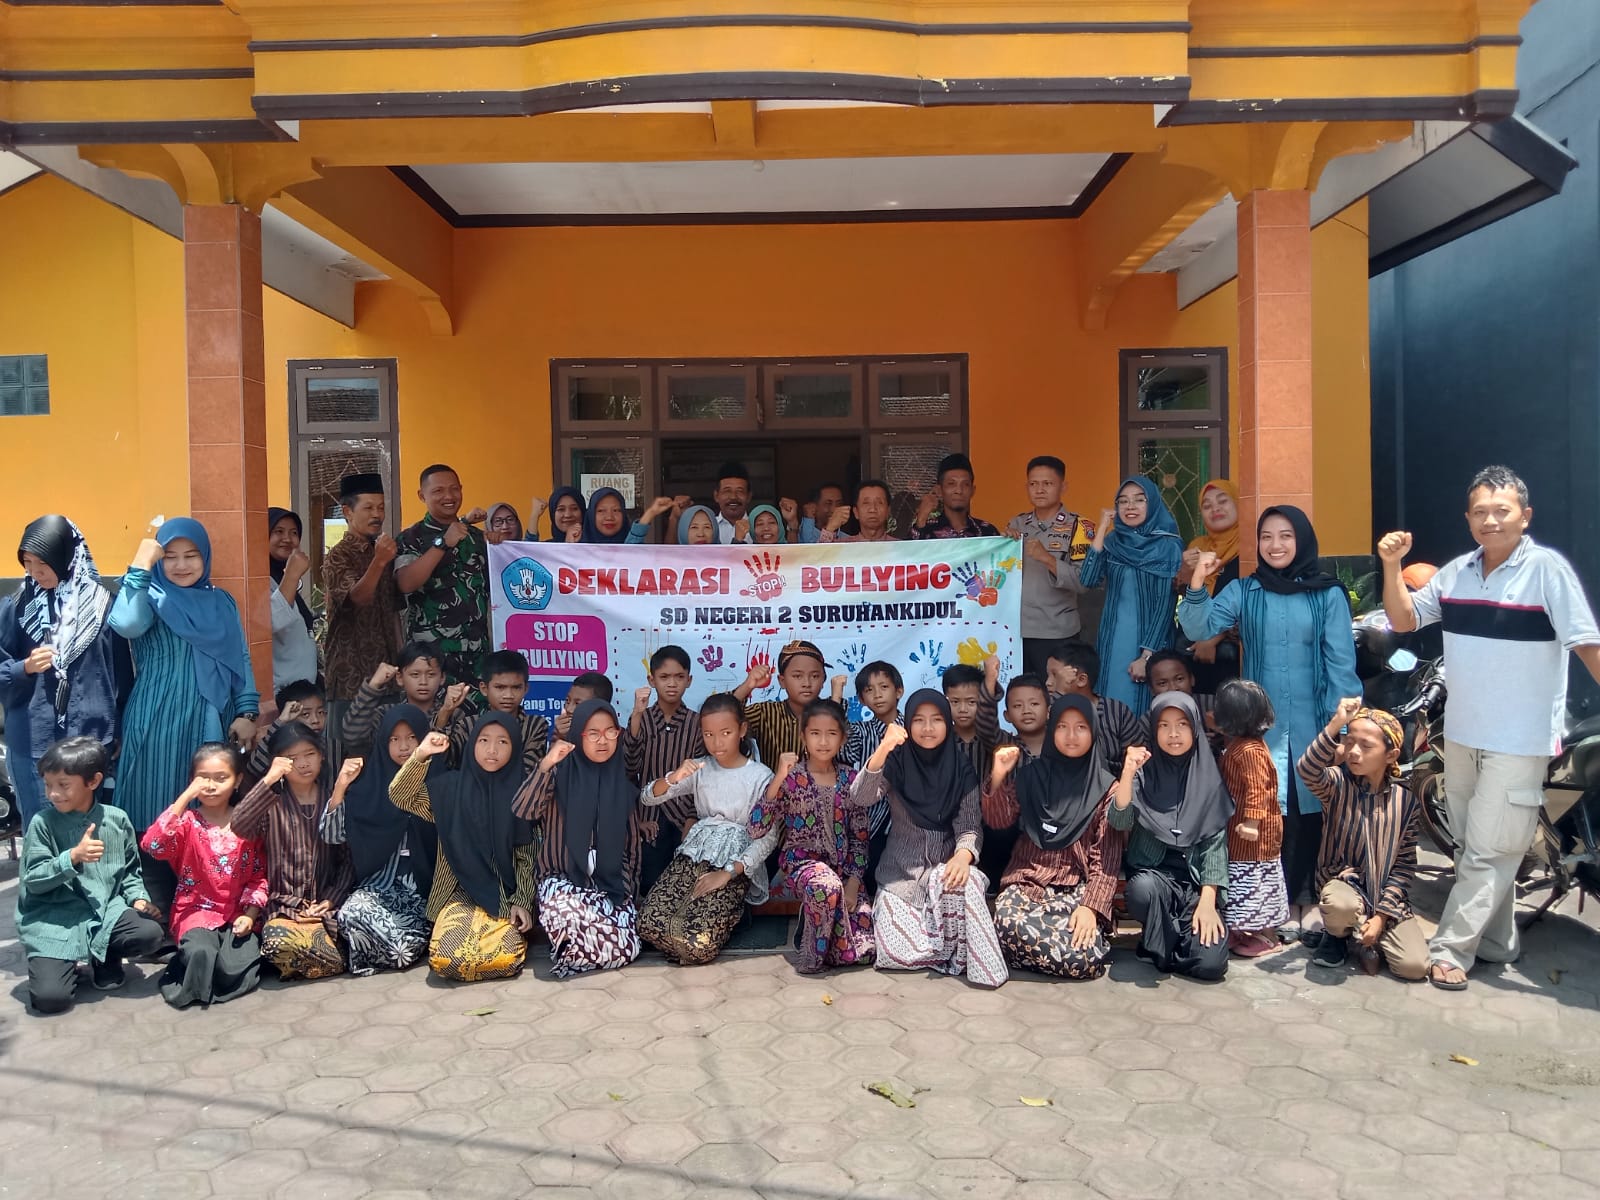 Korwil UPASP Beserta Tiga Pilar Kecamatan Bandung Tulungagung Hadir Dalam Sosialisasi Anti Bullying Dan Tindak Kekerasan Di SD Negeri 2 Suruhan Kidul